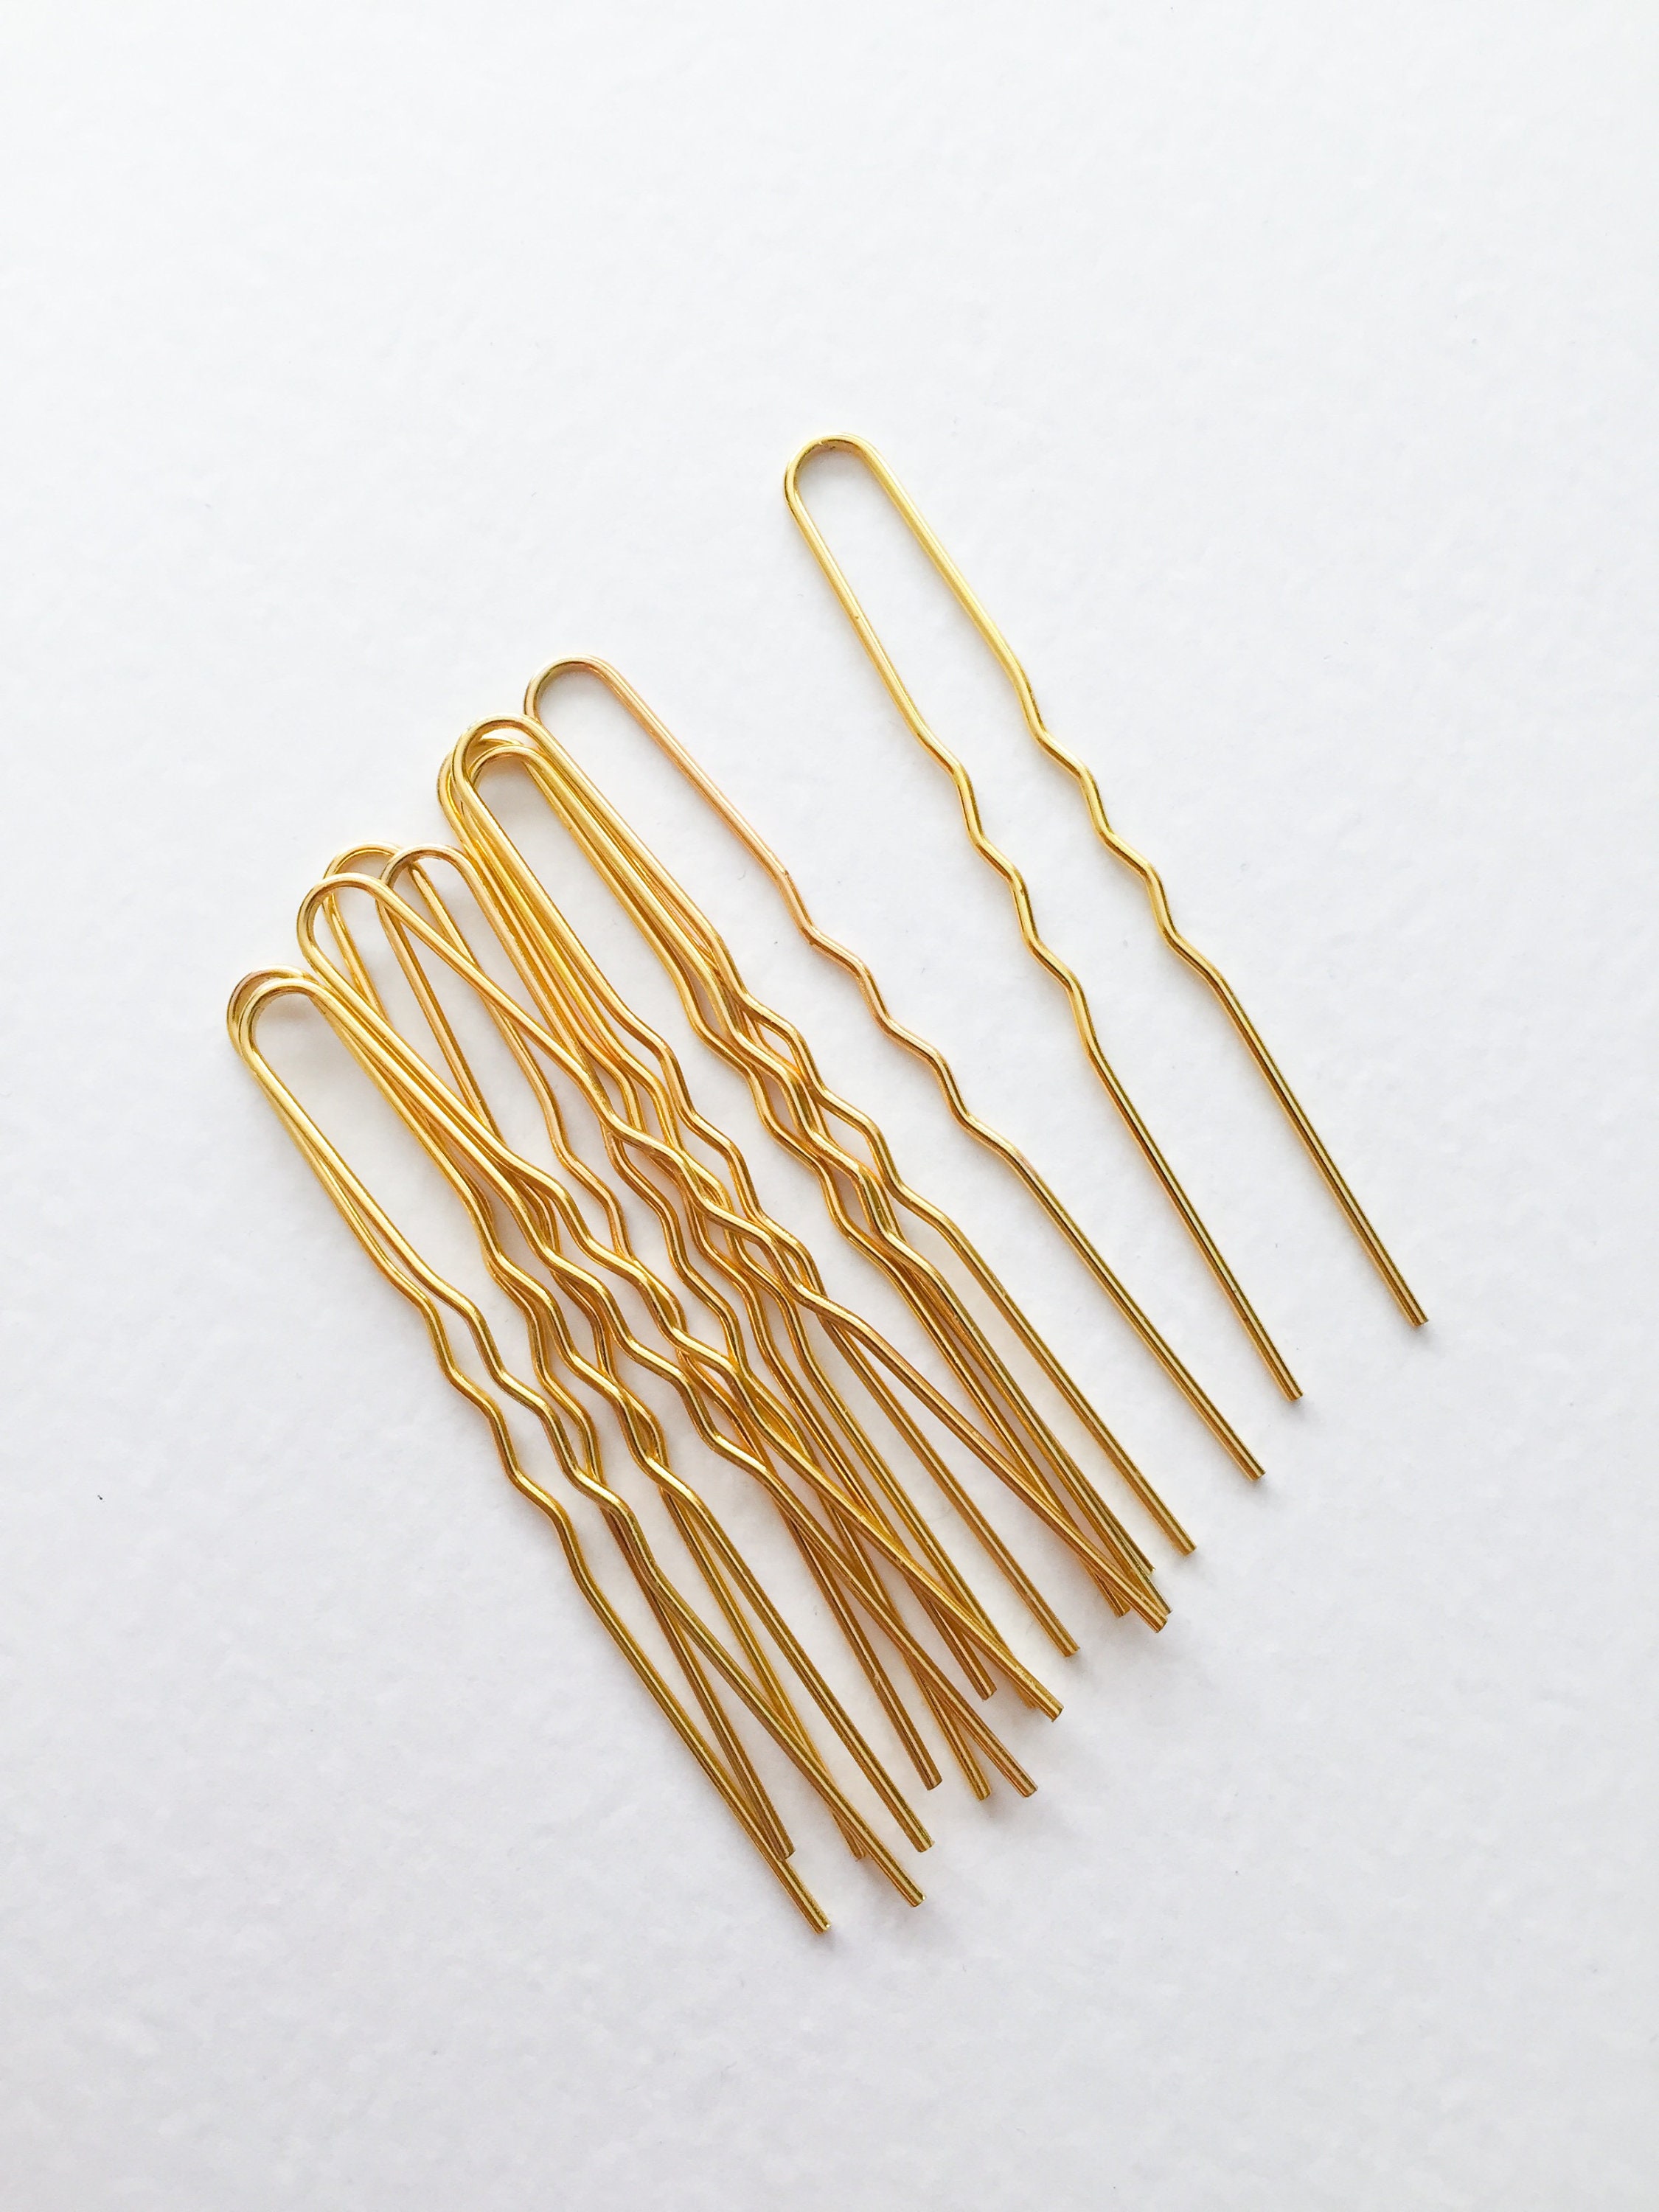 10 x Gold Tone Bobby Pins Golden Hair Pins DIY Hair Pins 72mm | Etsy